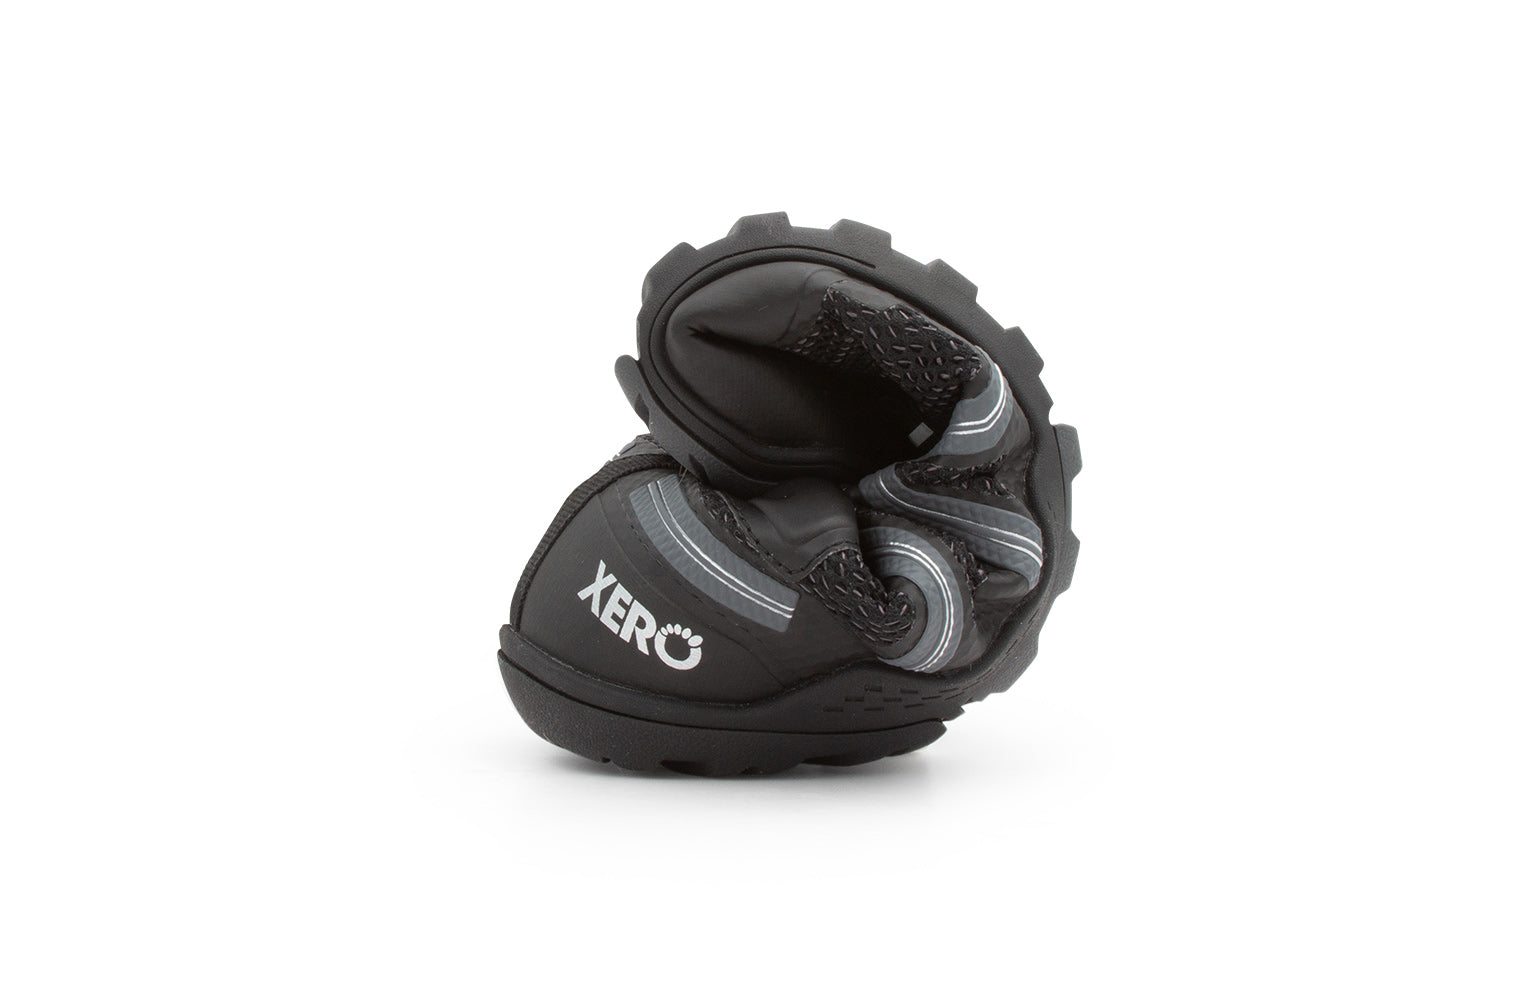 Xero Shoes Xcursion Fusion barfods støvler til mænd i farven black, rullet